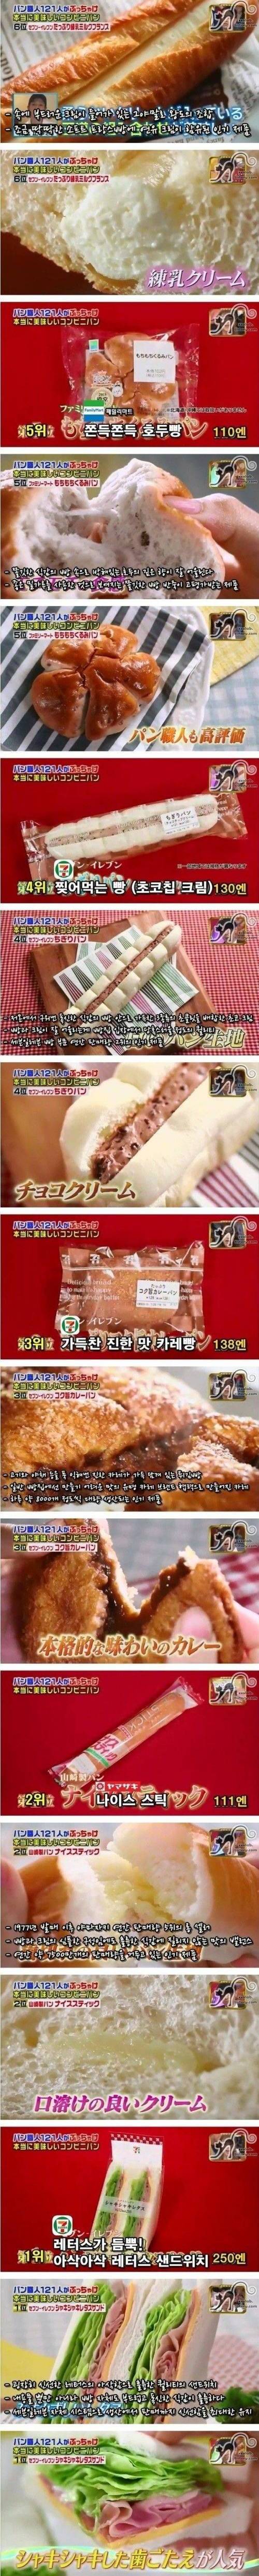 일본 빵집 장인들이 선택한 편의점 빵